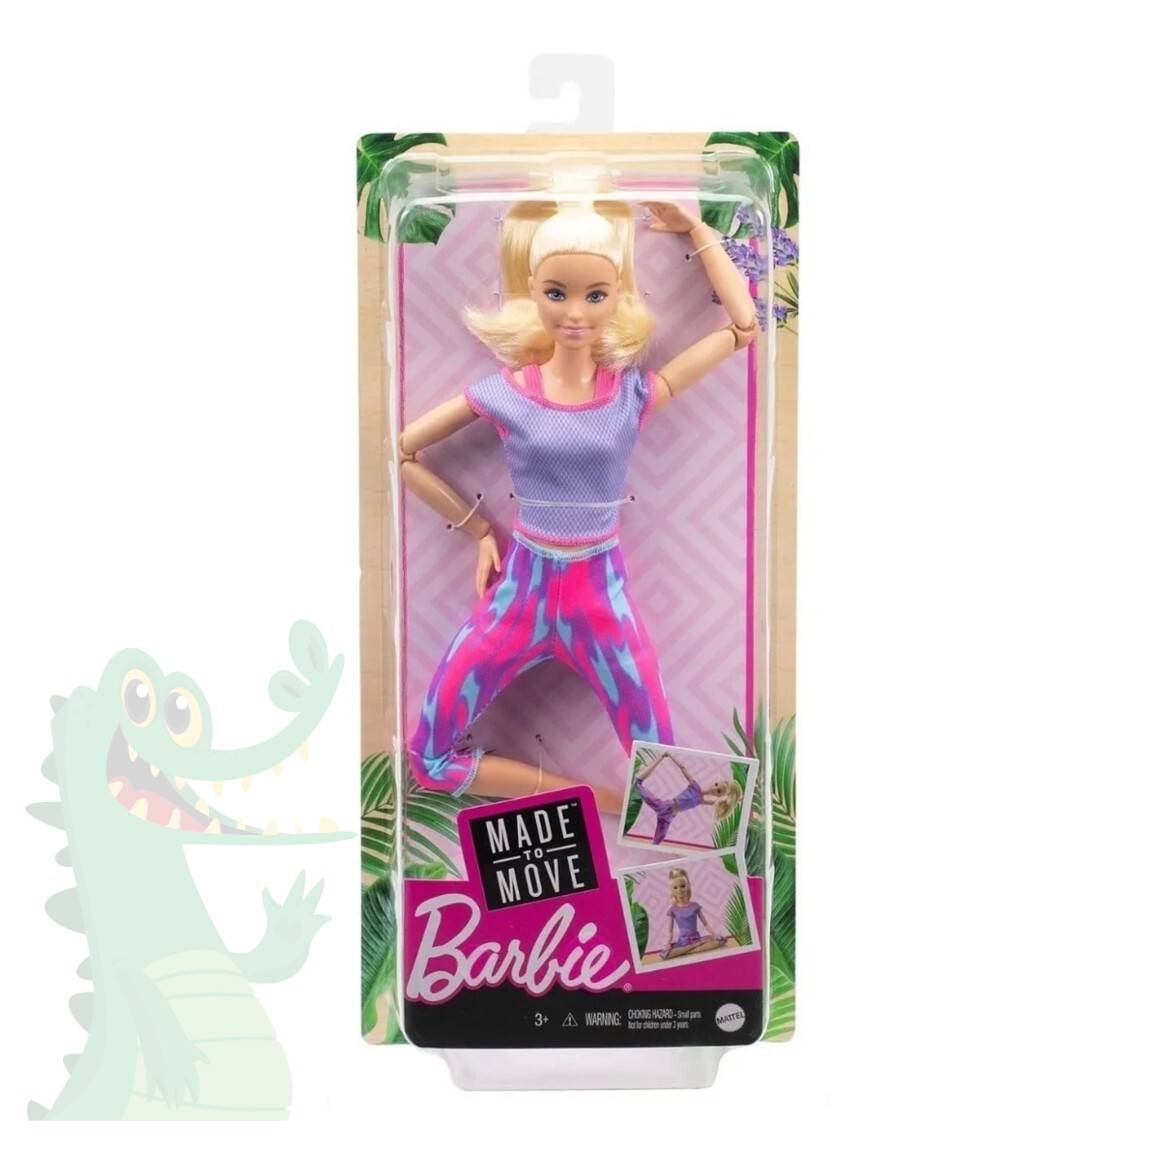 Barbie Casa De Boneca Dos Sonhos Hmx10